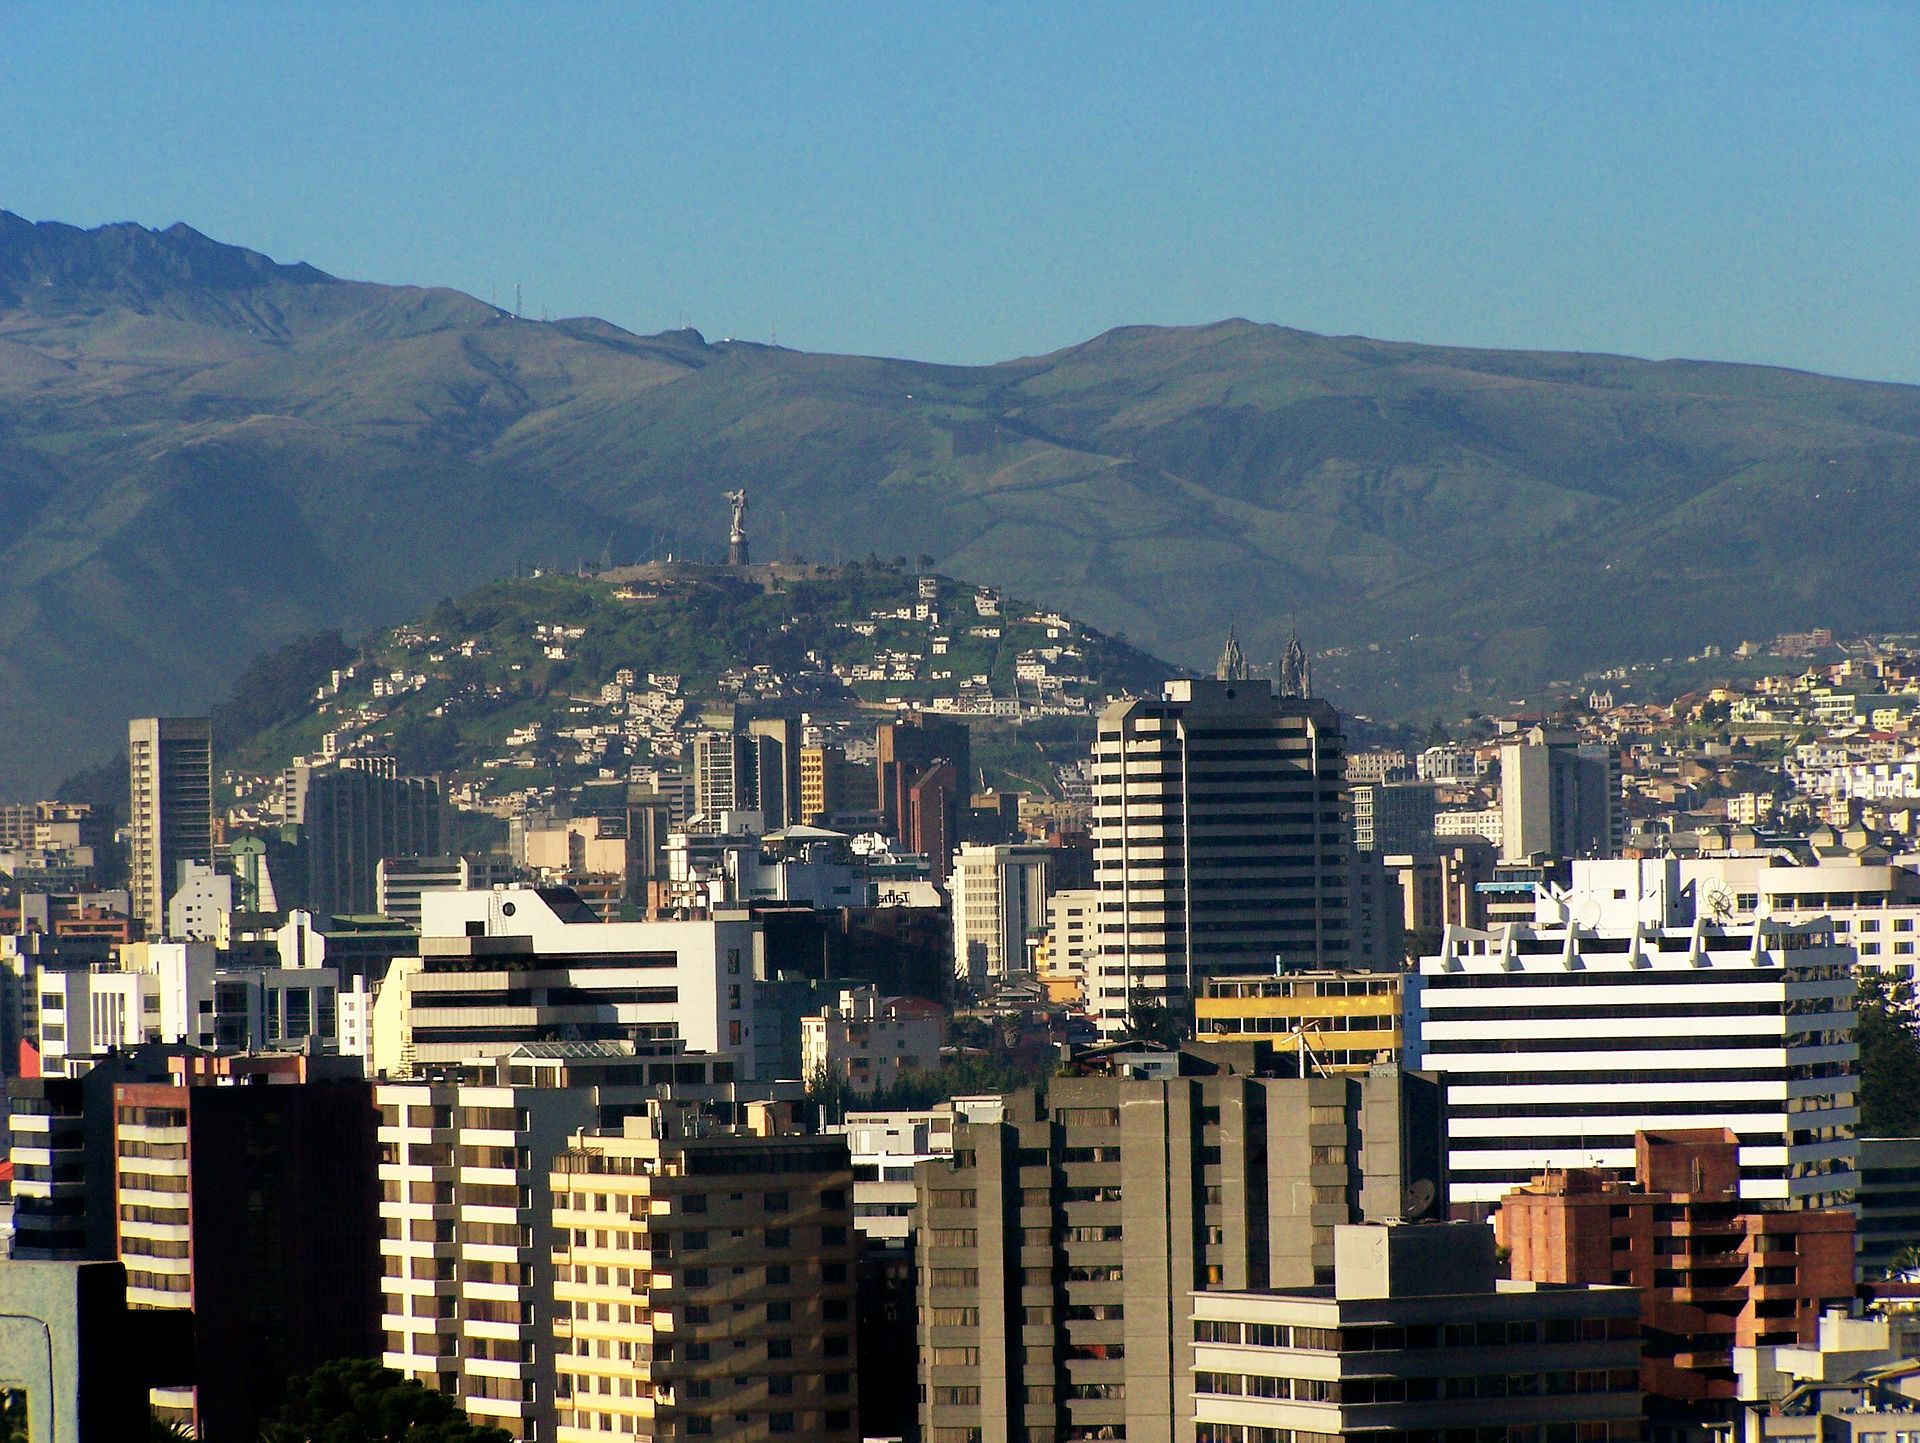 Quitopanoramica